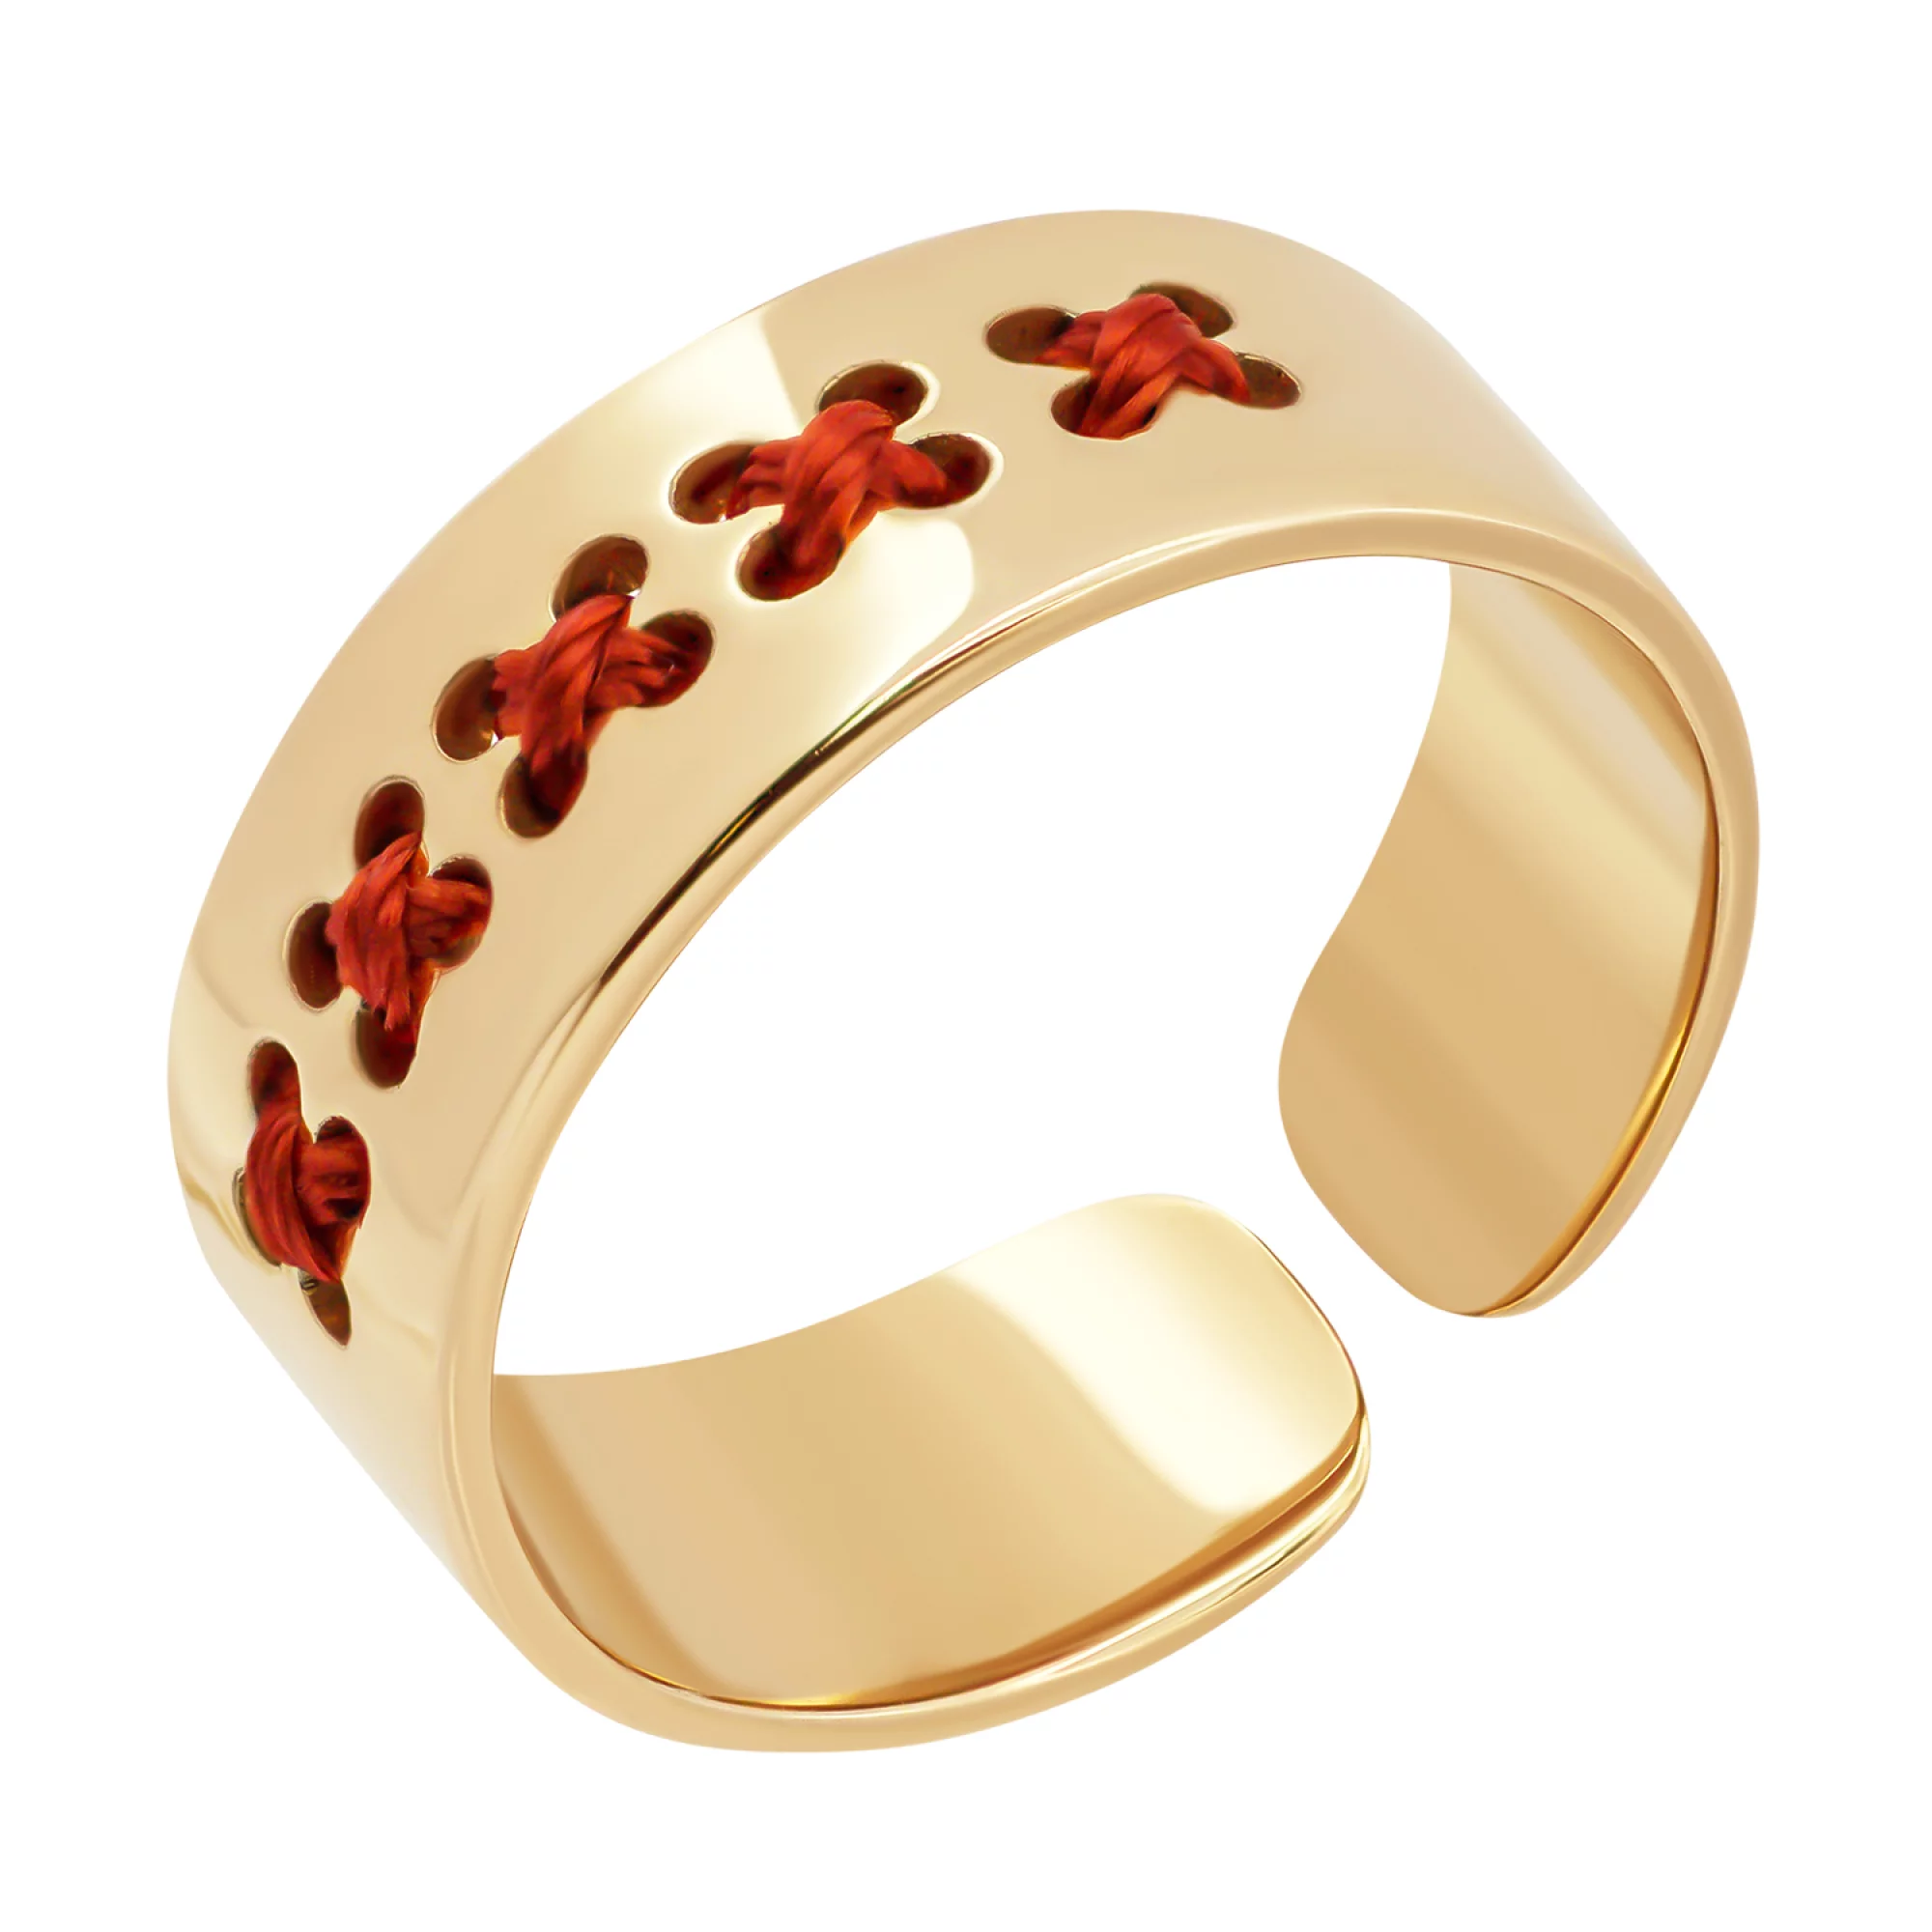 Каблучка з червоного золота з шовком та елементами вишивки  - 1339275 – зображення 1